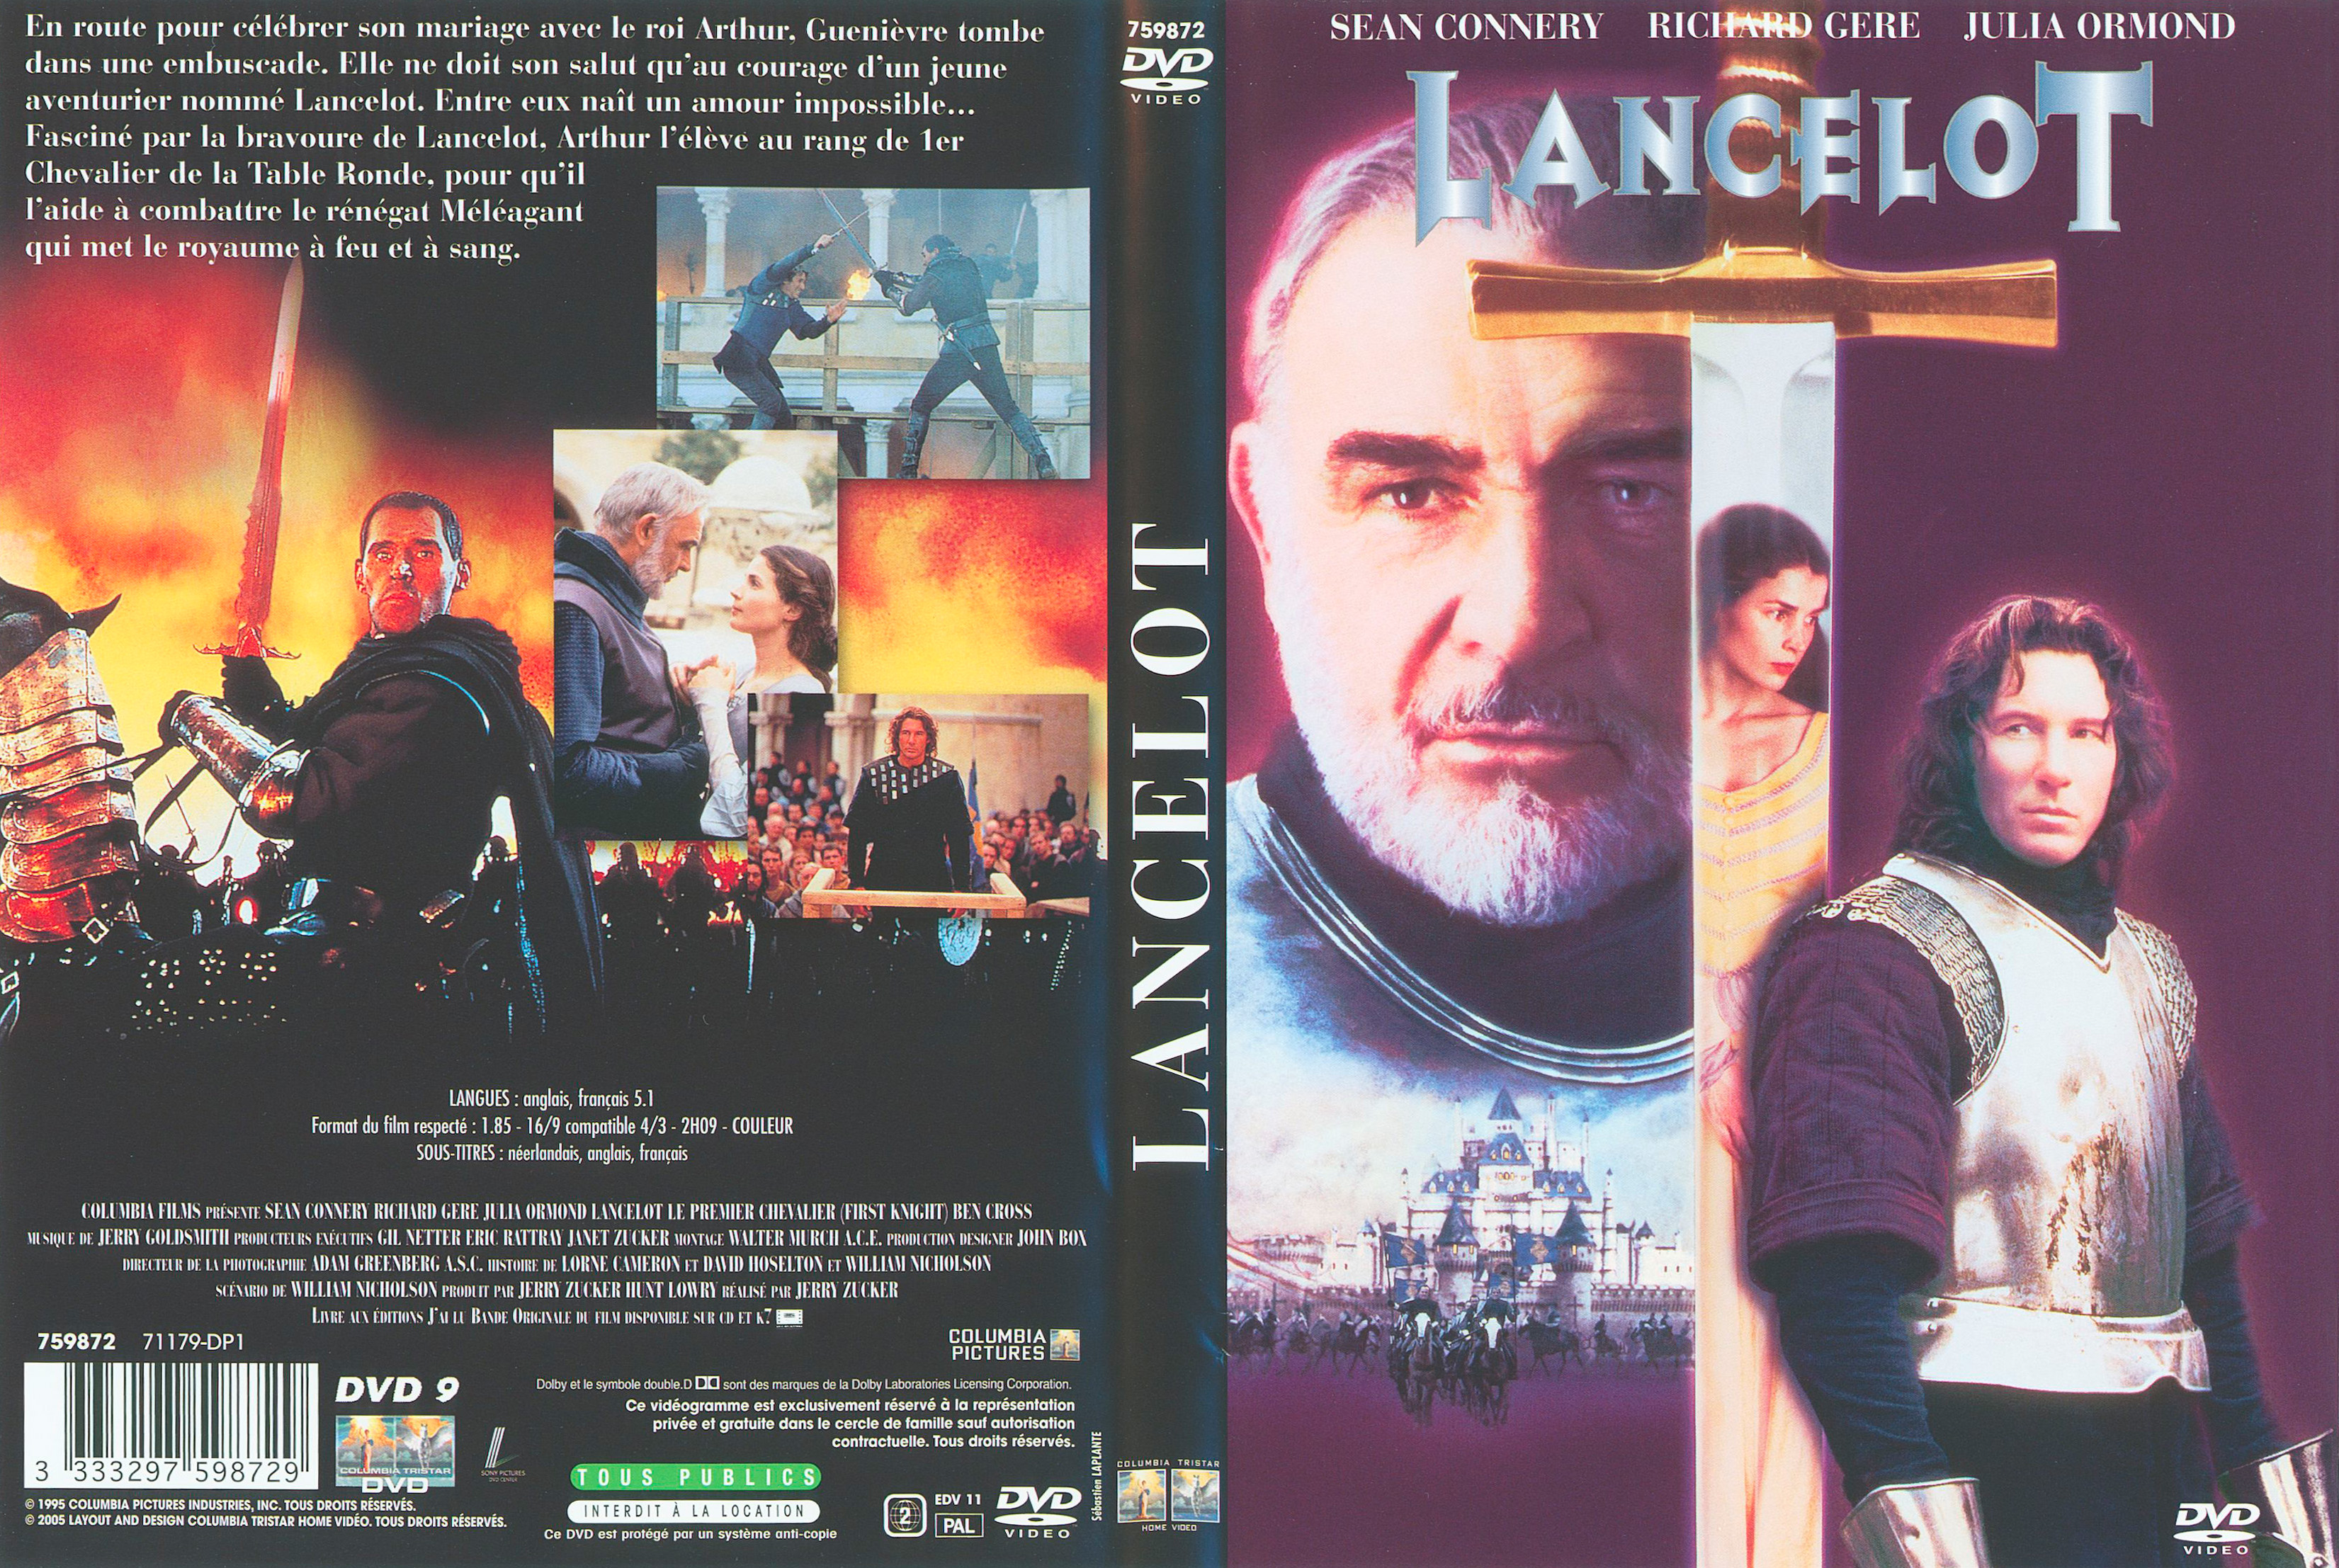 Jaquette DVD Lancelot v2